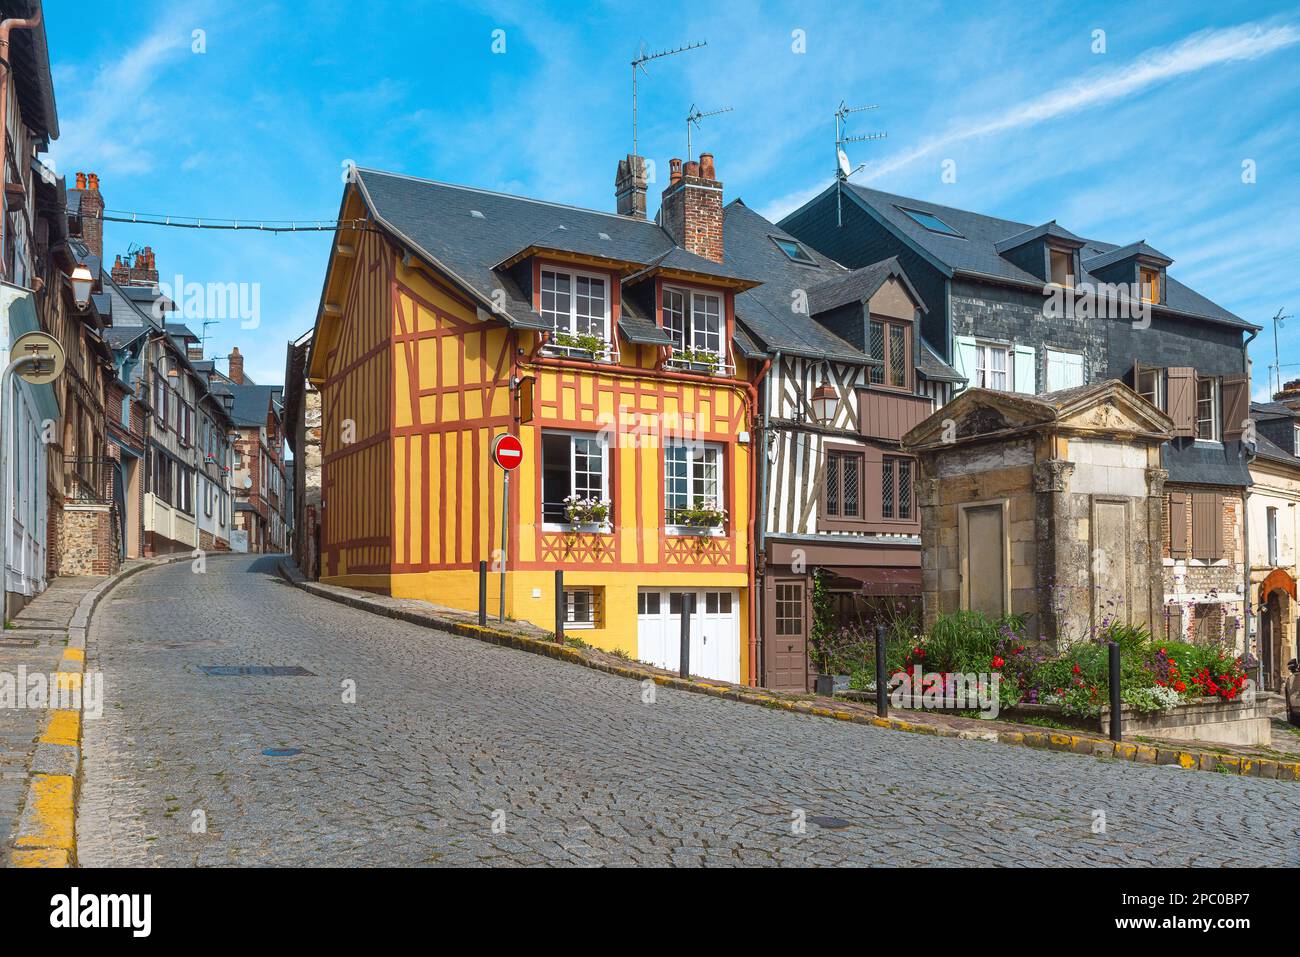 Vecchia strada accogliente con case in legno incorniciato a Honfleur, Normandia, Francia. Architettura e punti di riferimento di Honfleur, Normandie Foto Stock